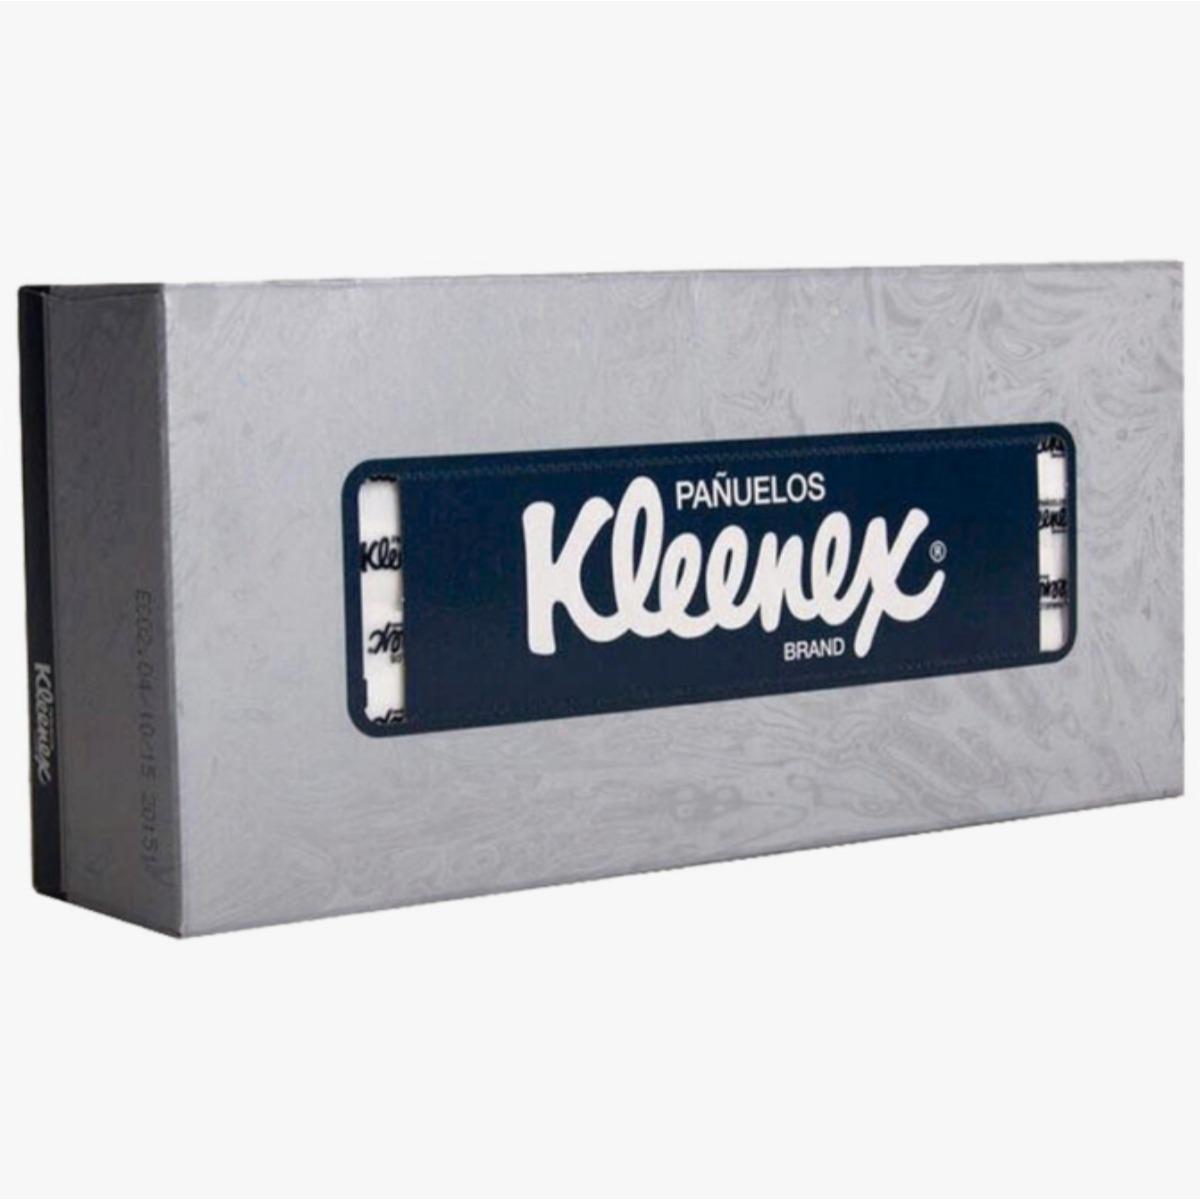 Pañuelos desechables kleenex caja c/ 90pzs